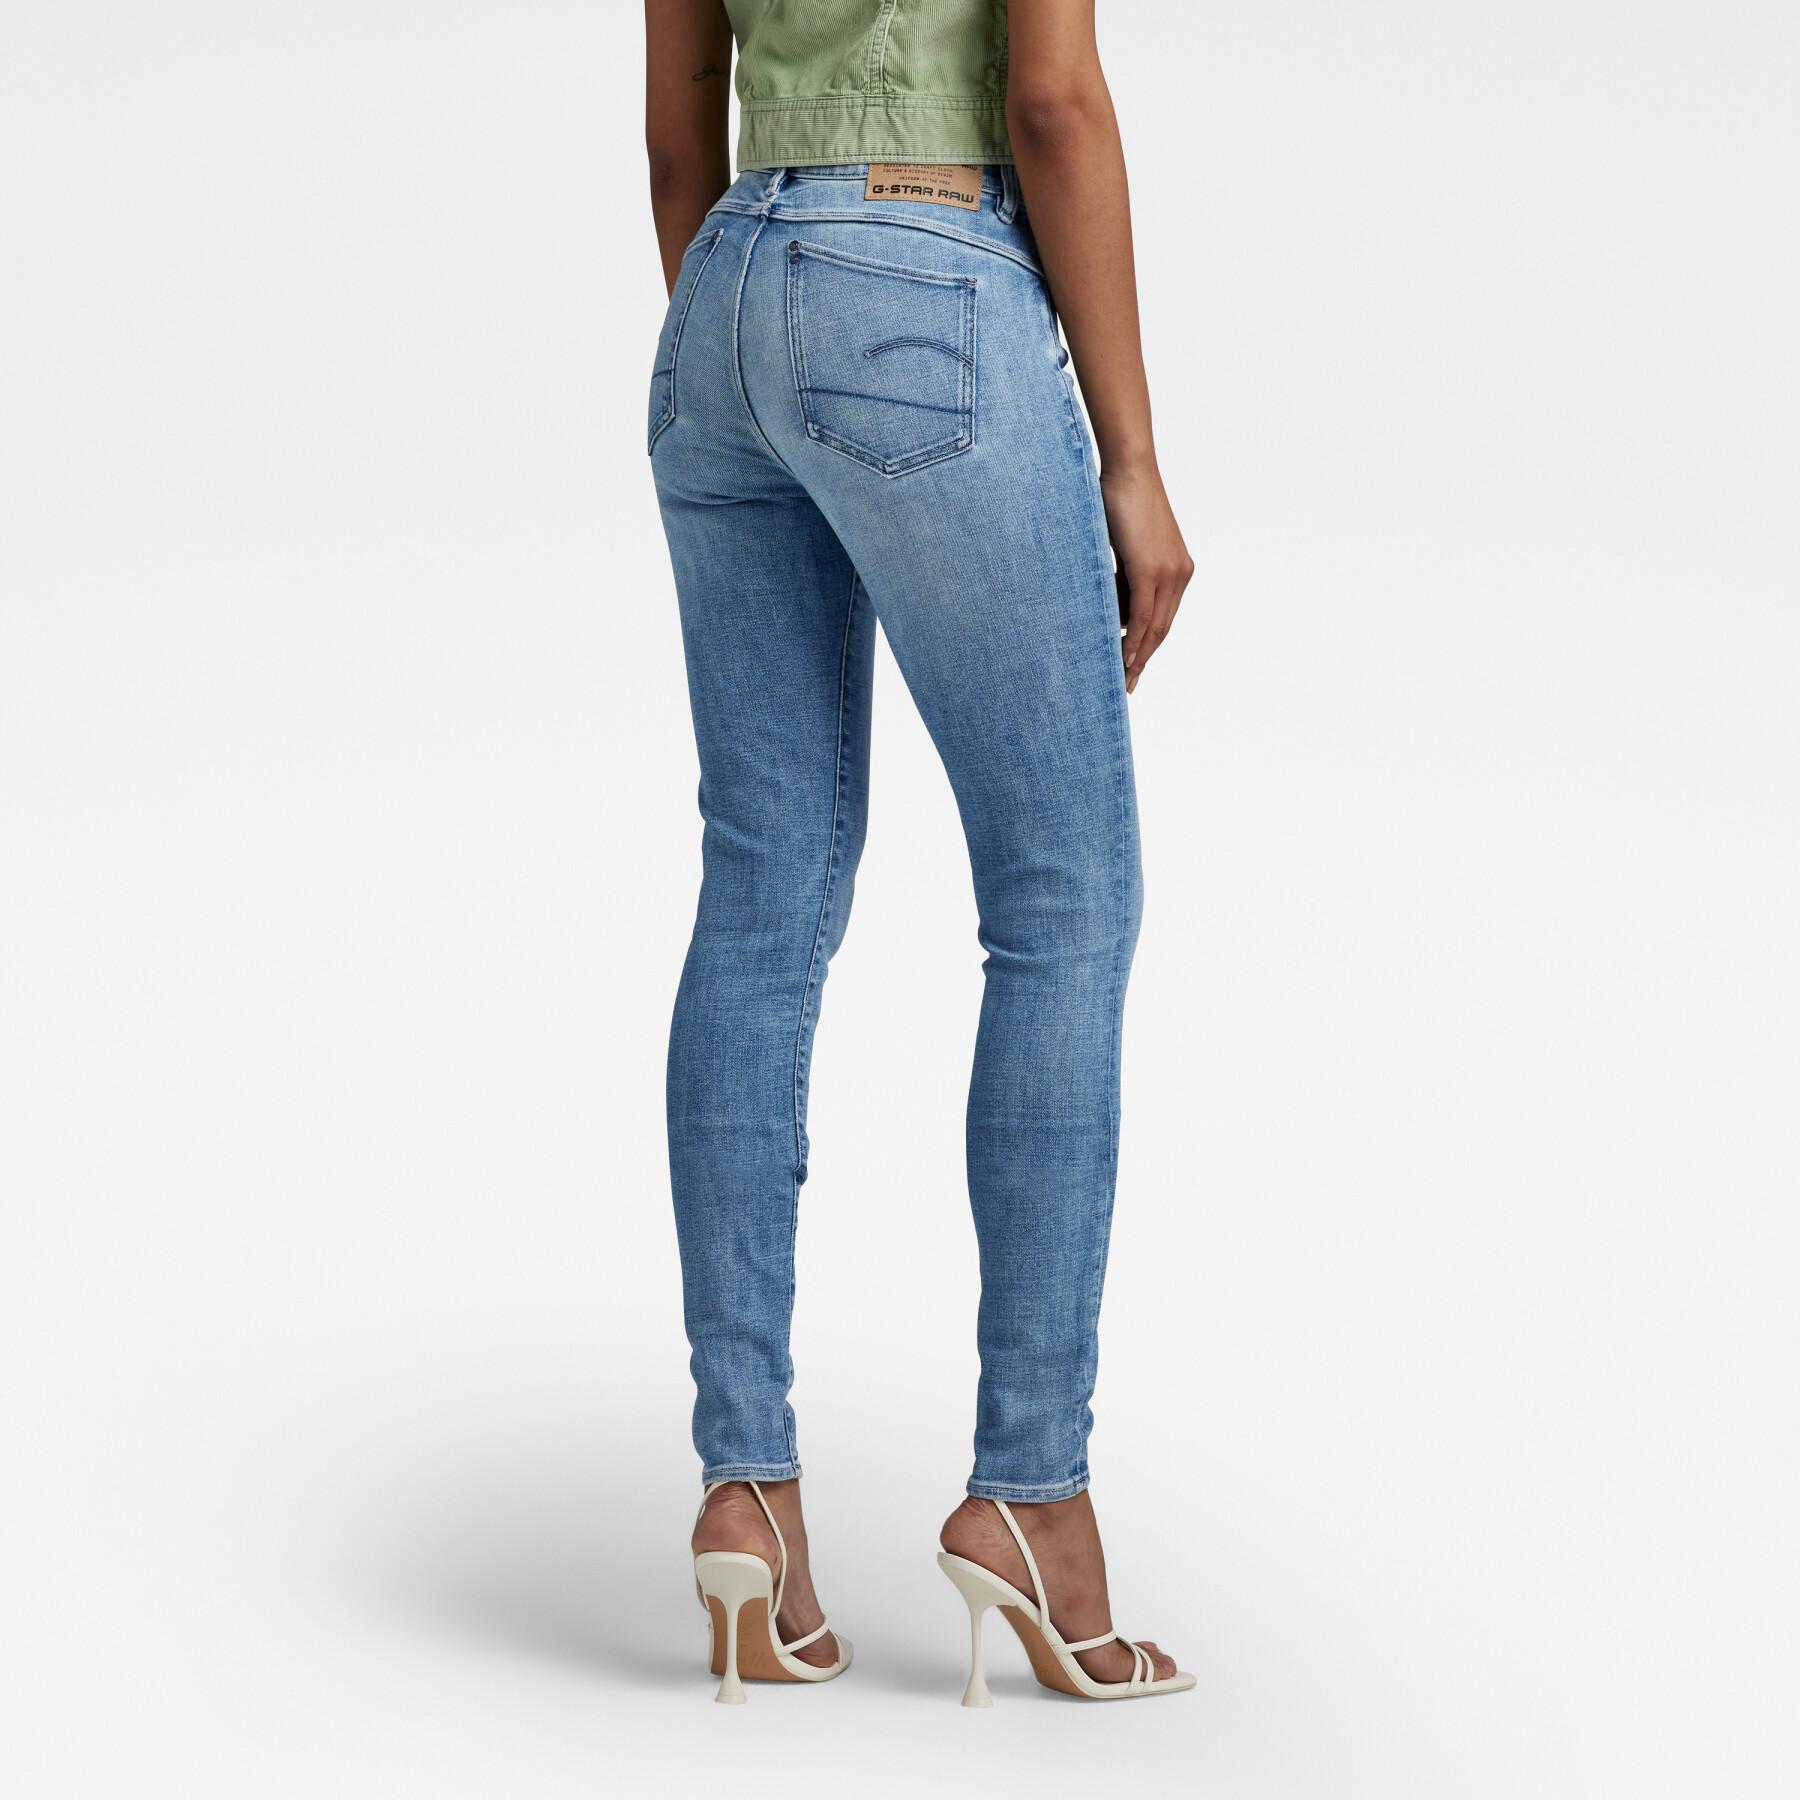 Women's skinny jeans G-Star Lhana